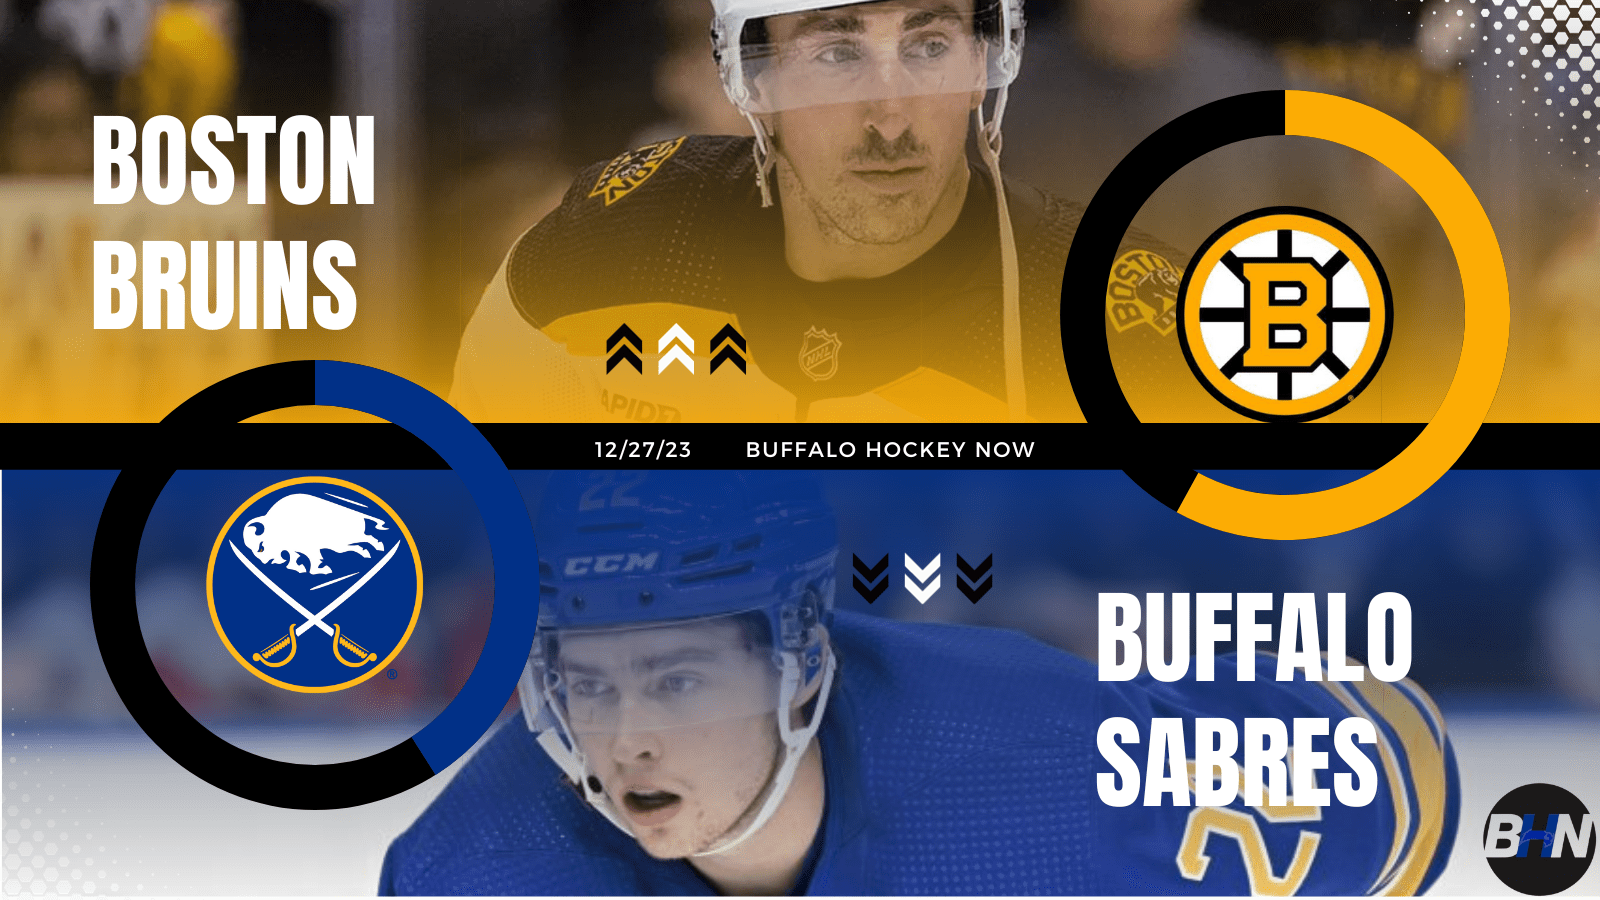 Boston Bruins Buffalo Sabres Gameday 12/27/23